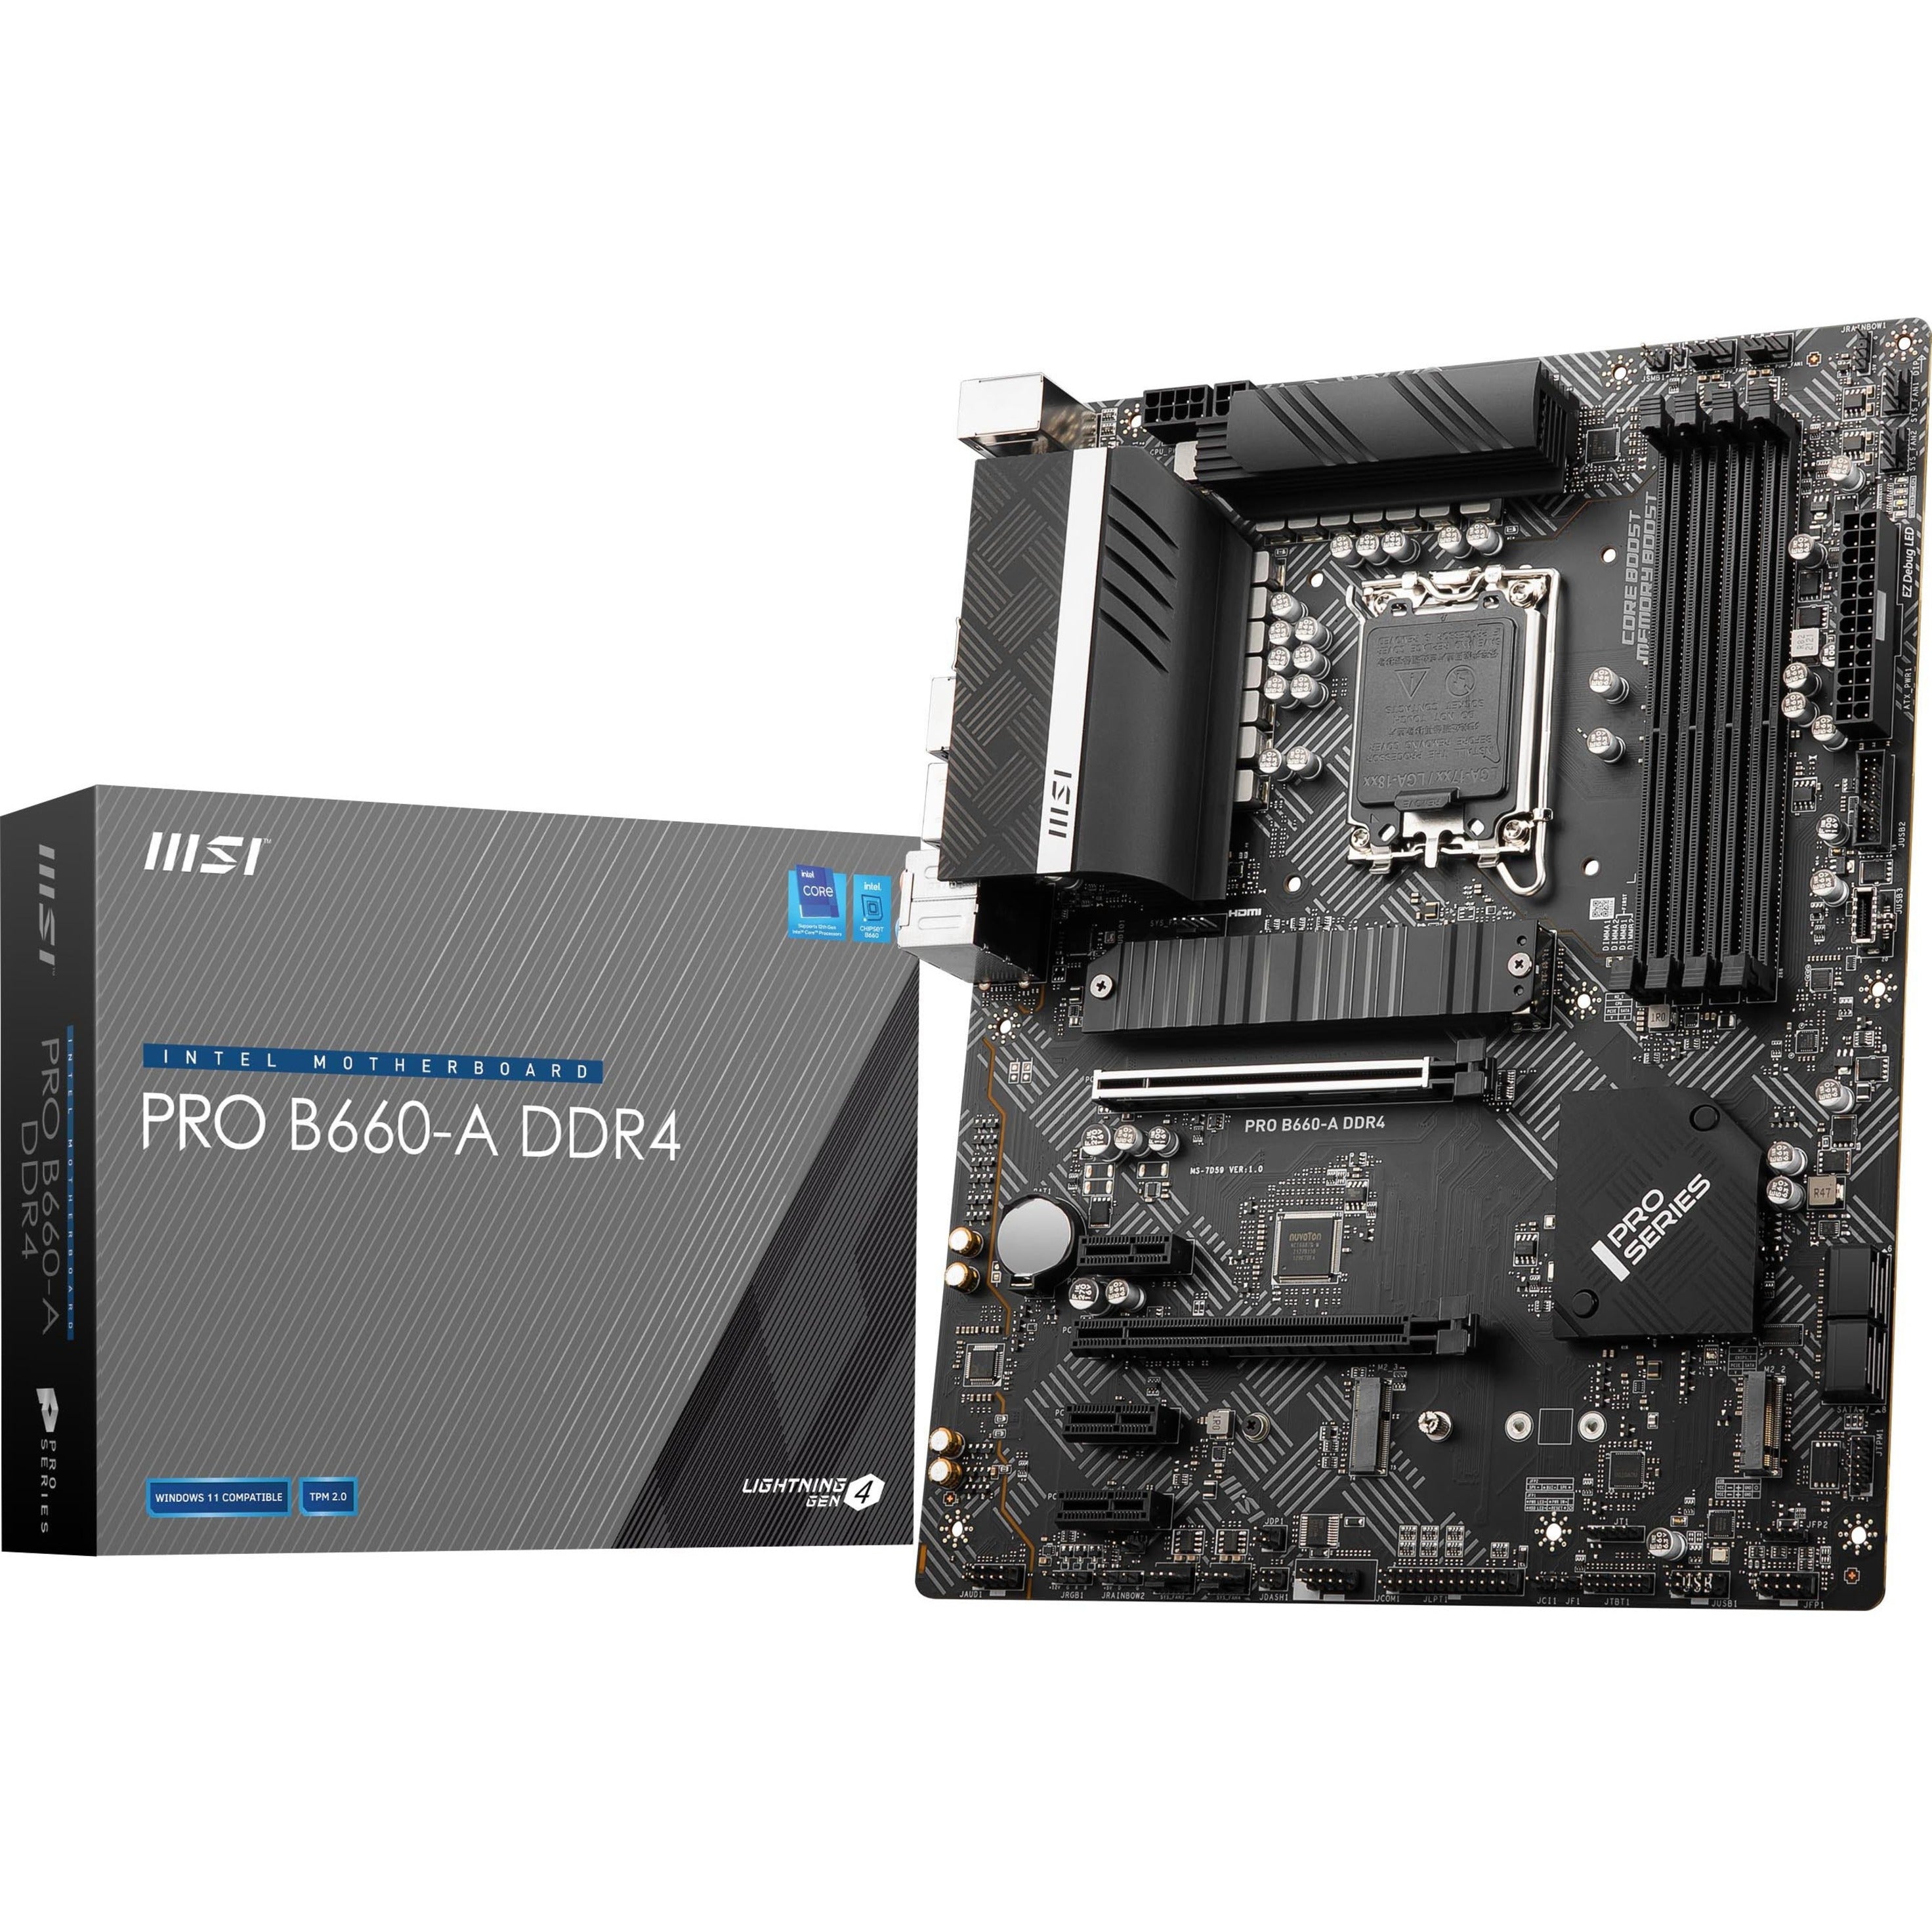 MSI PROB660ADDR4 PRO B660-A DDR4 ATX Motherboard, Intel 12th Gen, 128GB RAM, 2.5G Ethernet